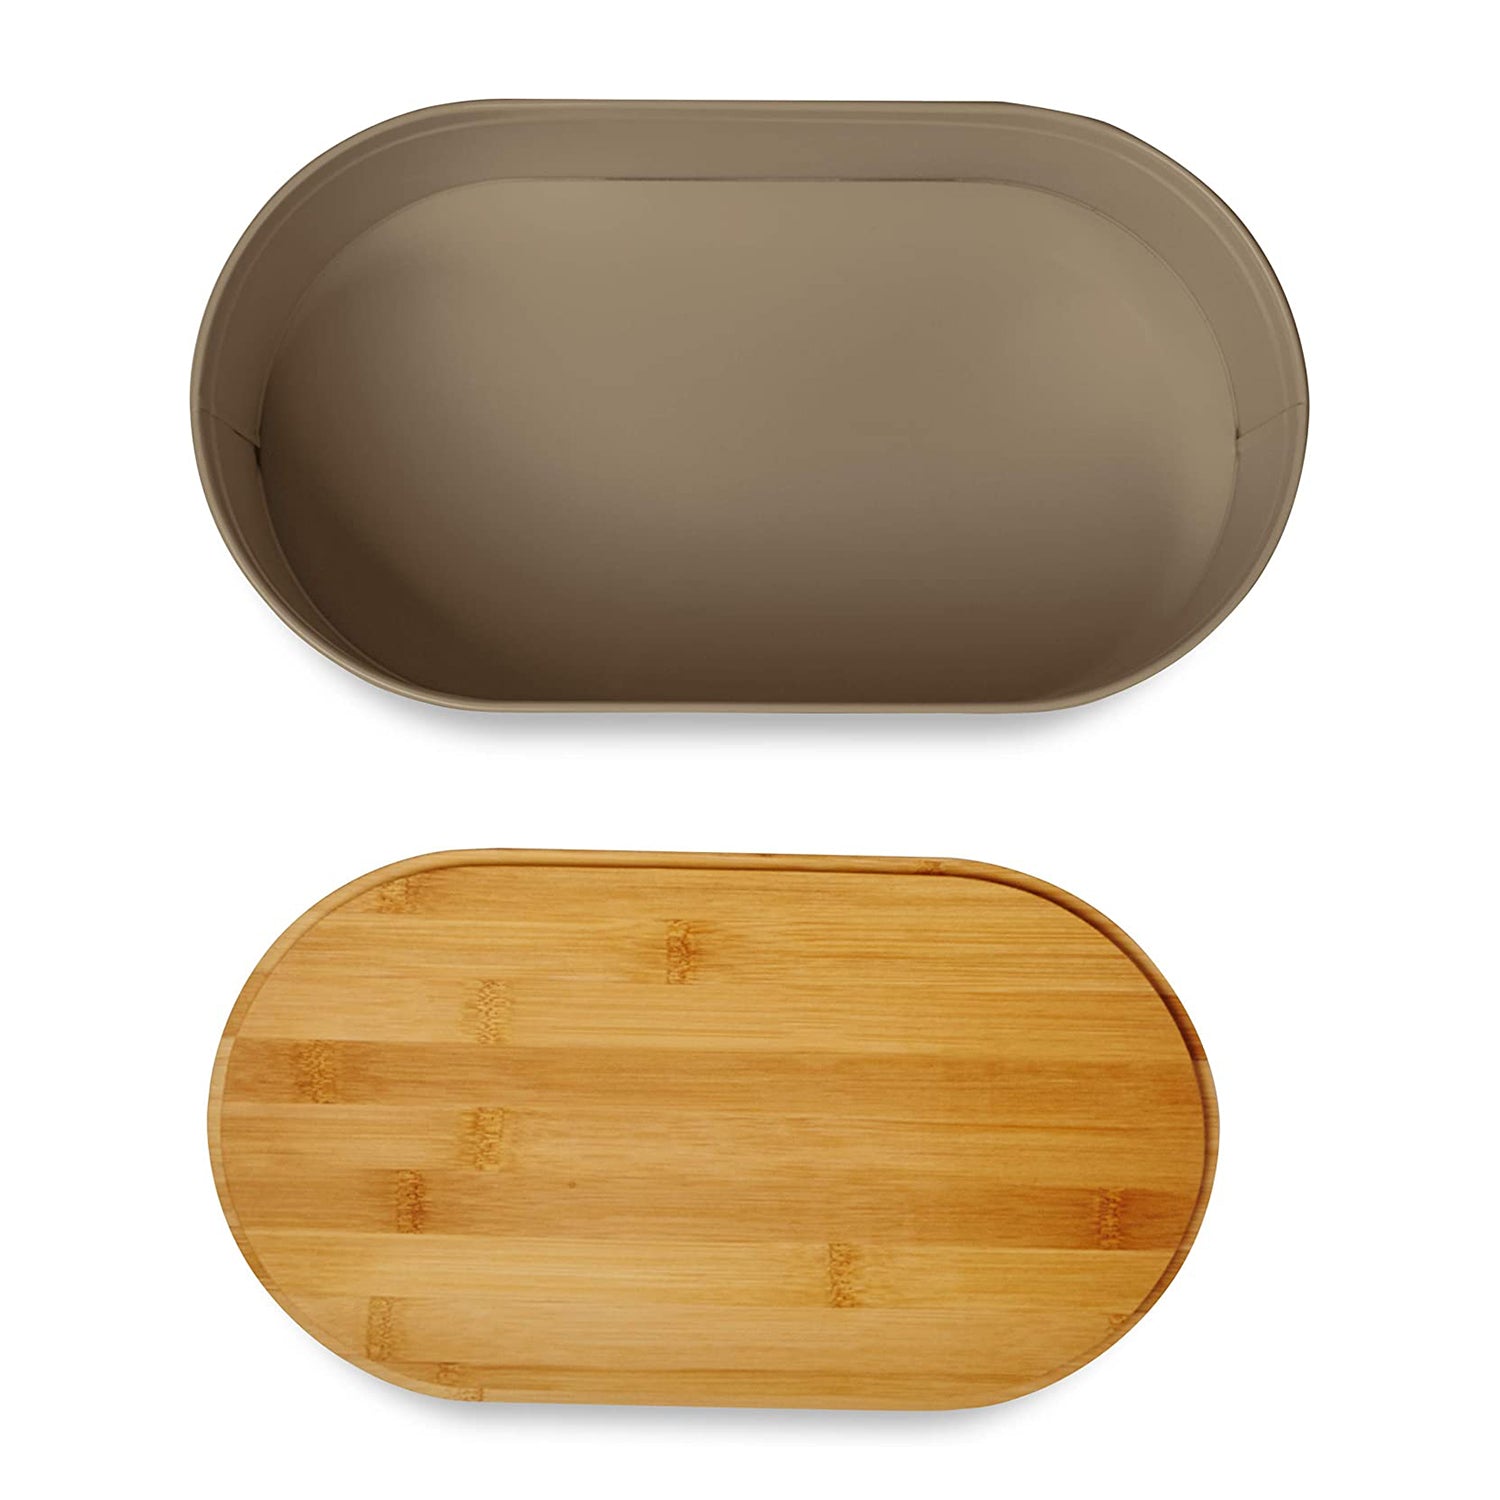 Cuisine Brotkasten aus Metall mit Bambus Deckel - Oval 36 x 20 x 13,8 cm - Grau